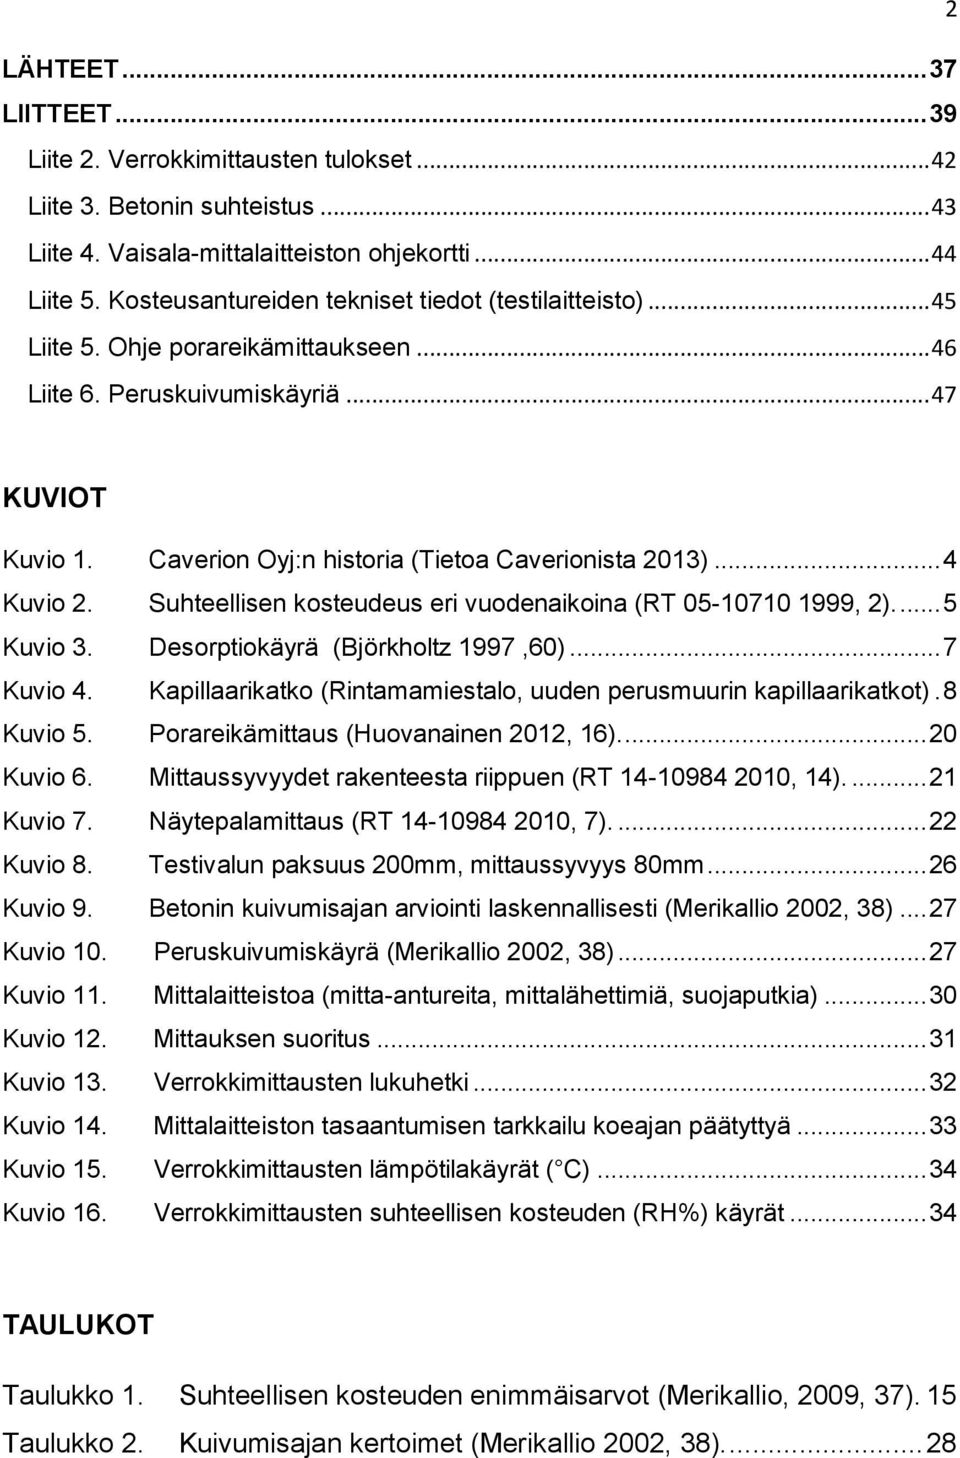 Caverion Oyj:n historia (Tietoa Caverionista 2013)... 4 Kuvio 2. Suhteellisen kosteudeus eri vuodenaikoina (RT 05-10710 1999, 2).... 5 Kuvio 3. Desorptiokäyrä (Björkholtz 1997,60)... 7 Kuvio 4.